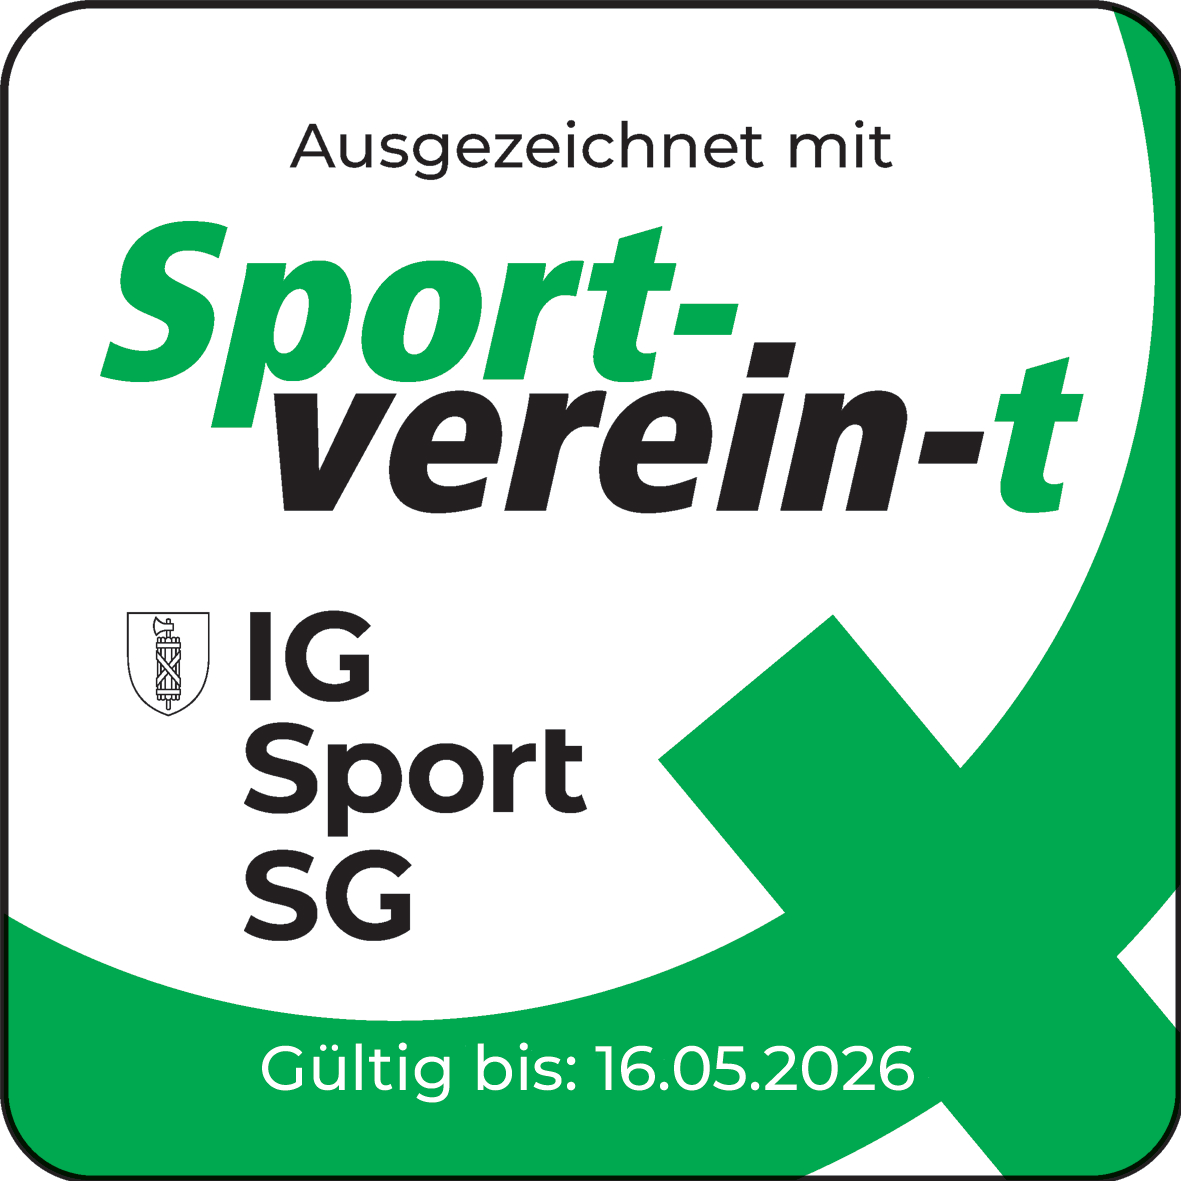 Q-Logo Sport-verein-t gültig bis 16.05.2026